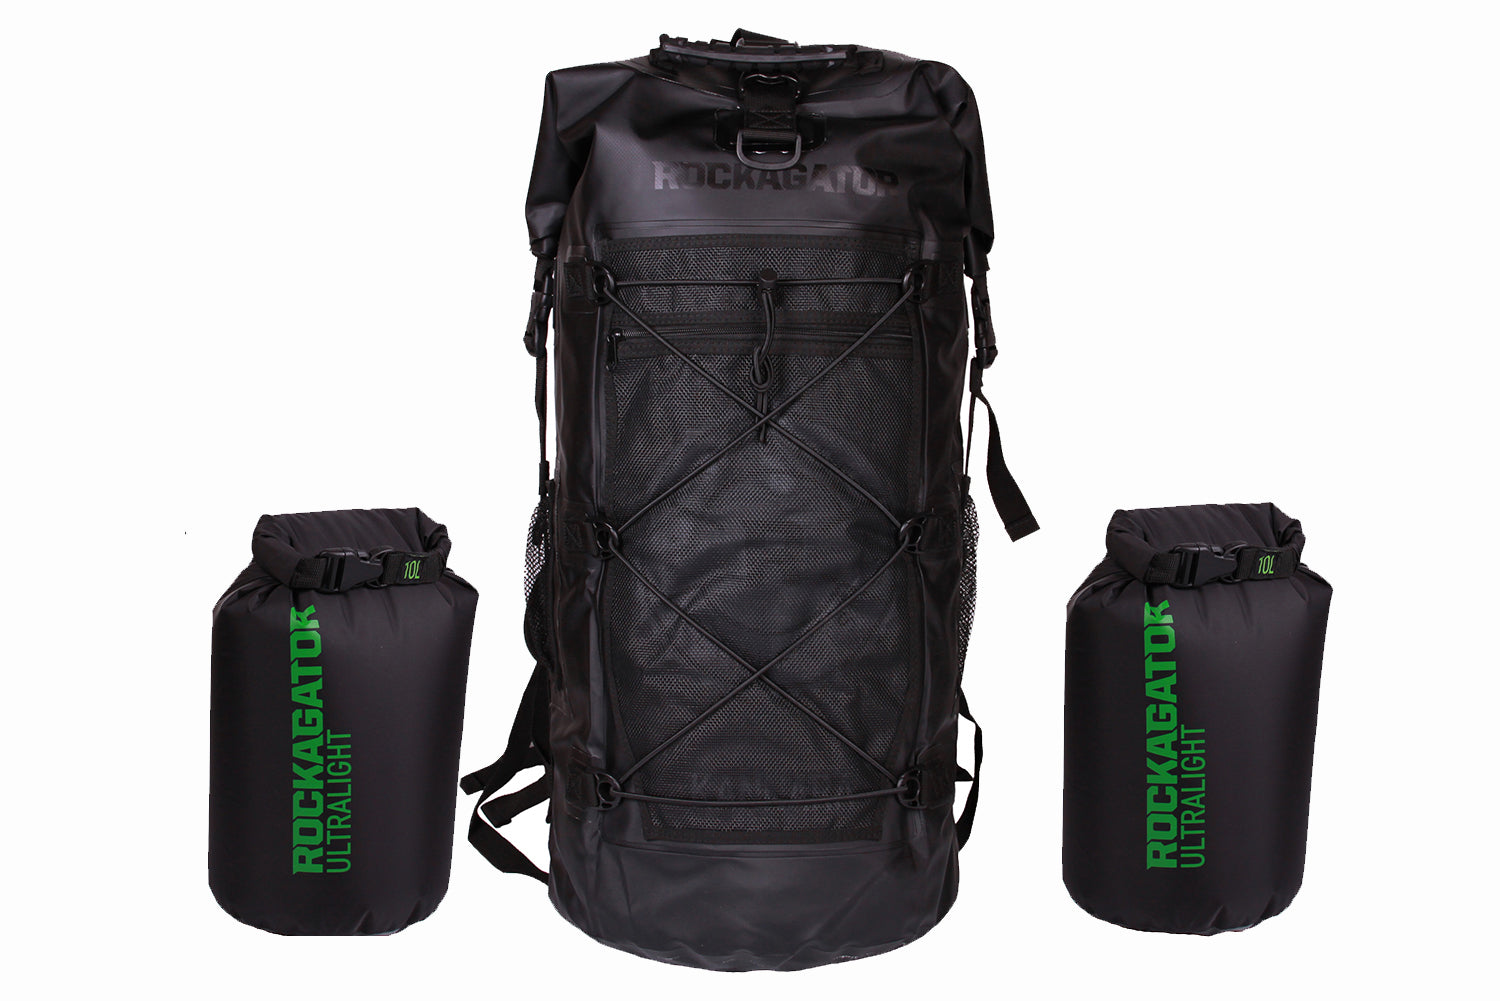 Bundle Special Kanarra 90L BLACK Waterproof Backpack and 2 Dry Bags